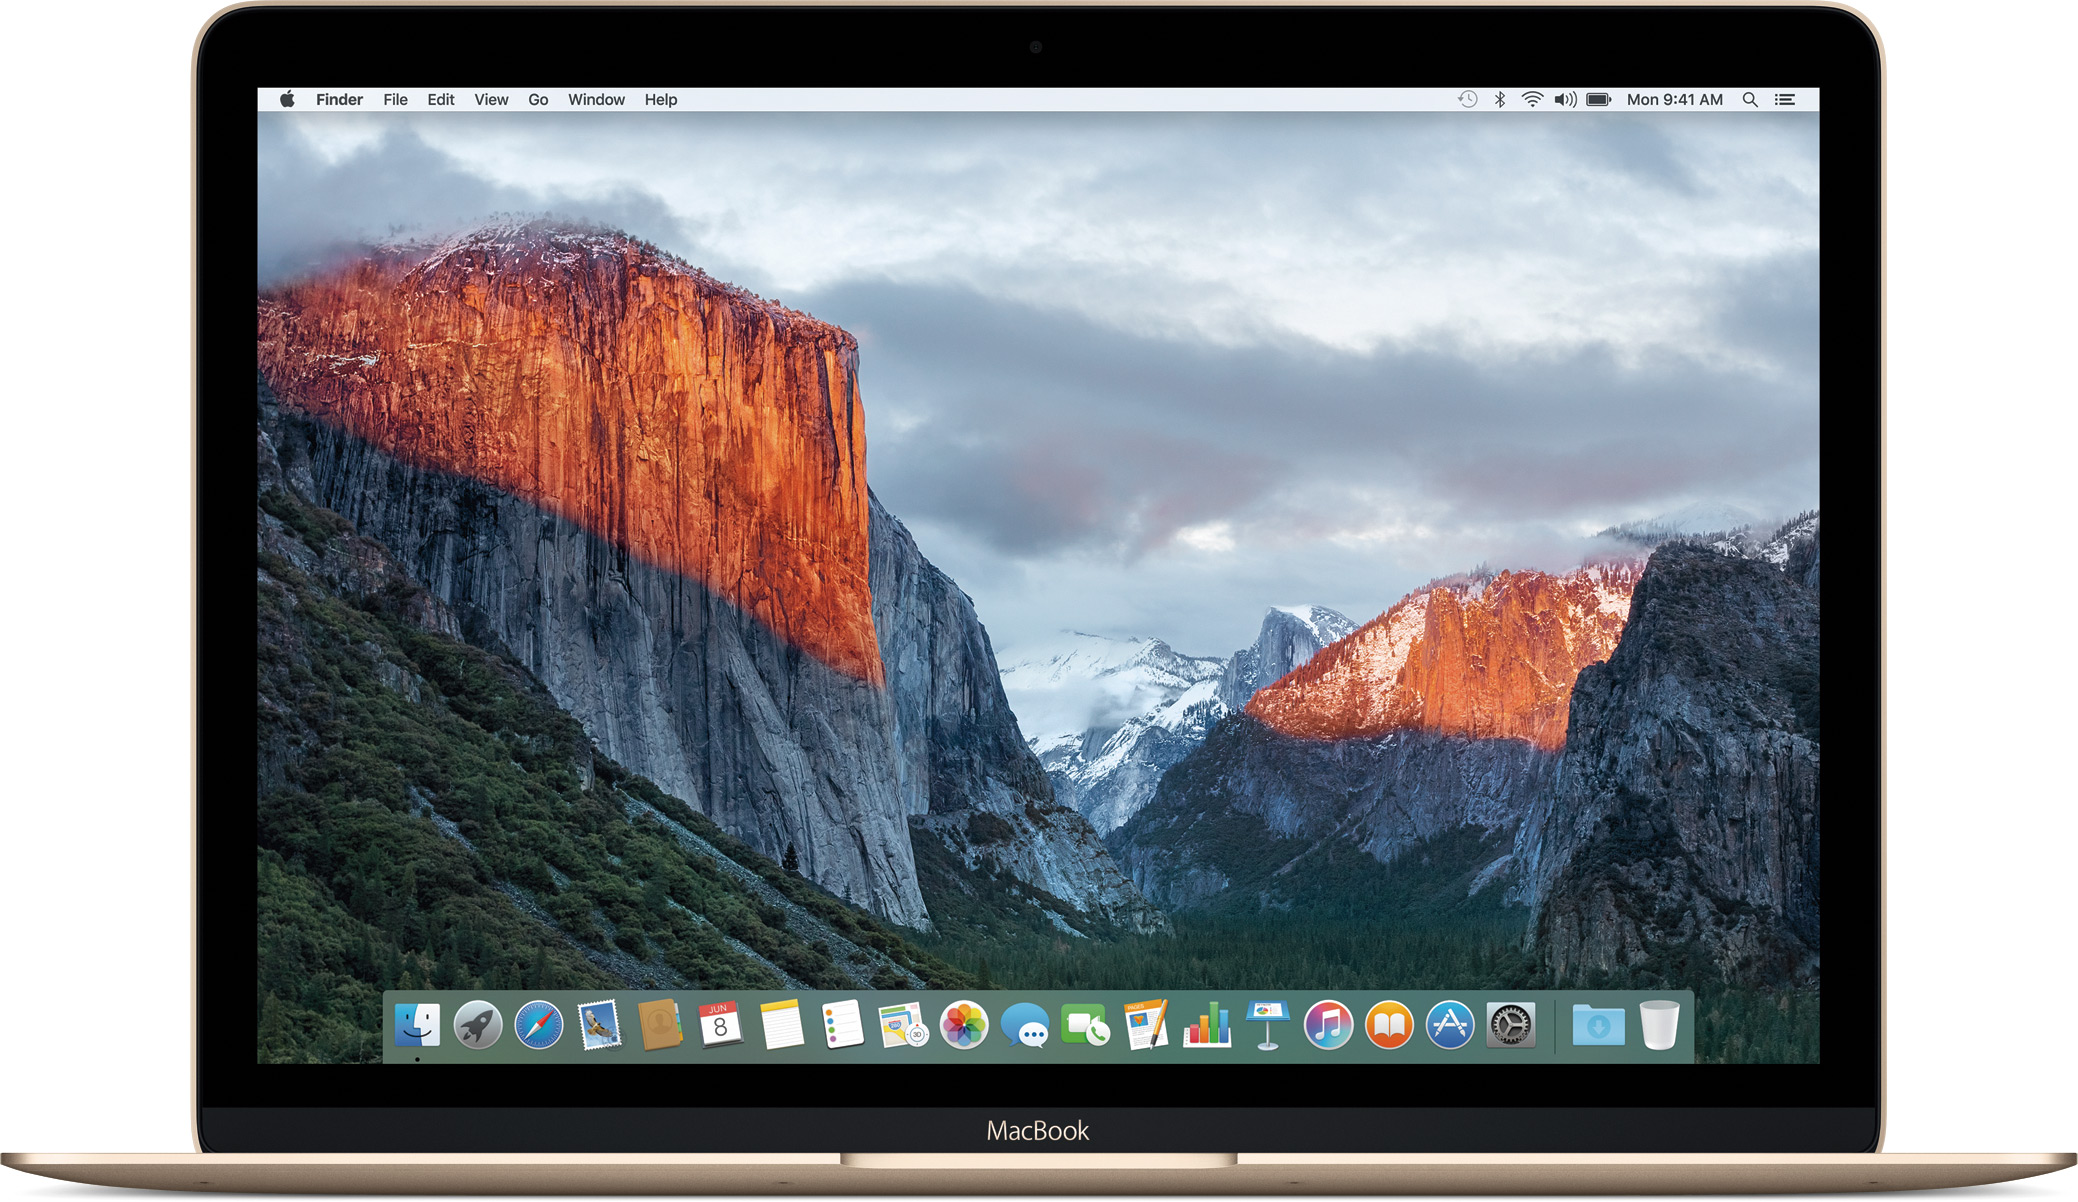 OS X El Capitan home screen on a MacBook